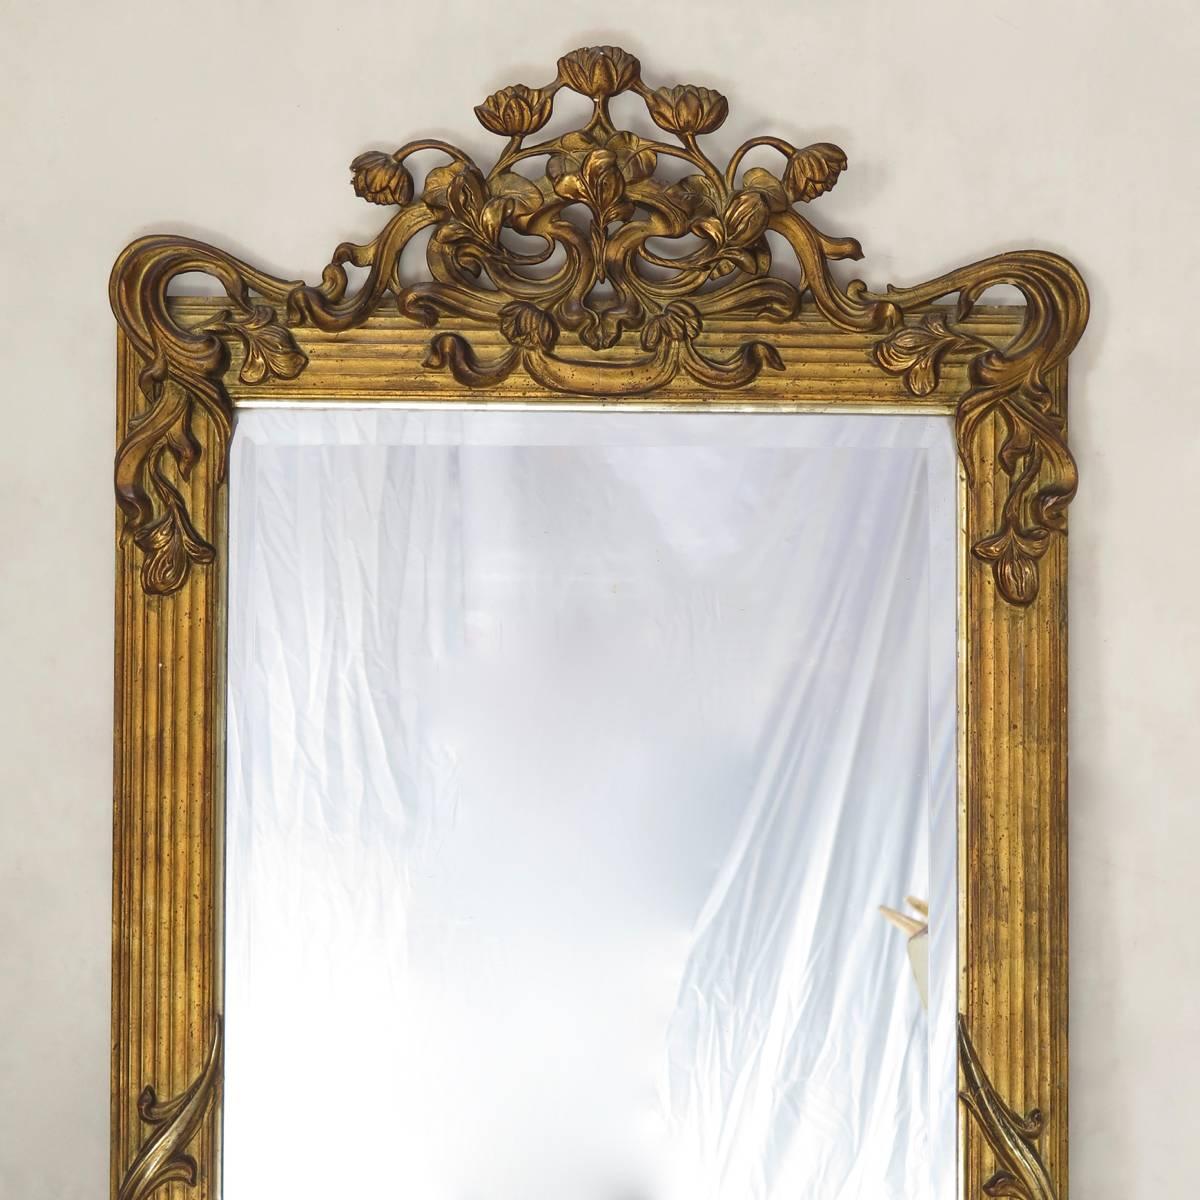 Seltener und schöner großer, vergoldeter Gipsspiegel mit einem Dekor aus Lotusblumen, Schwertlilien und Blattwerk auf einem sanft geriffelten Rahmen. Swag Detail. Der Spiegel ist in Holz gefasst und mit seinem originalen, abgeschrägten Glas in sehr